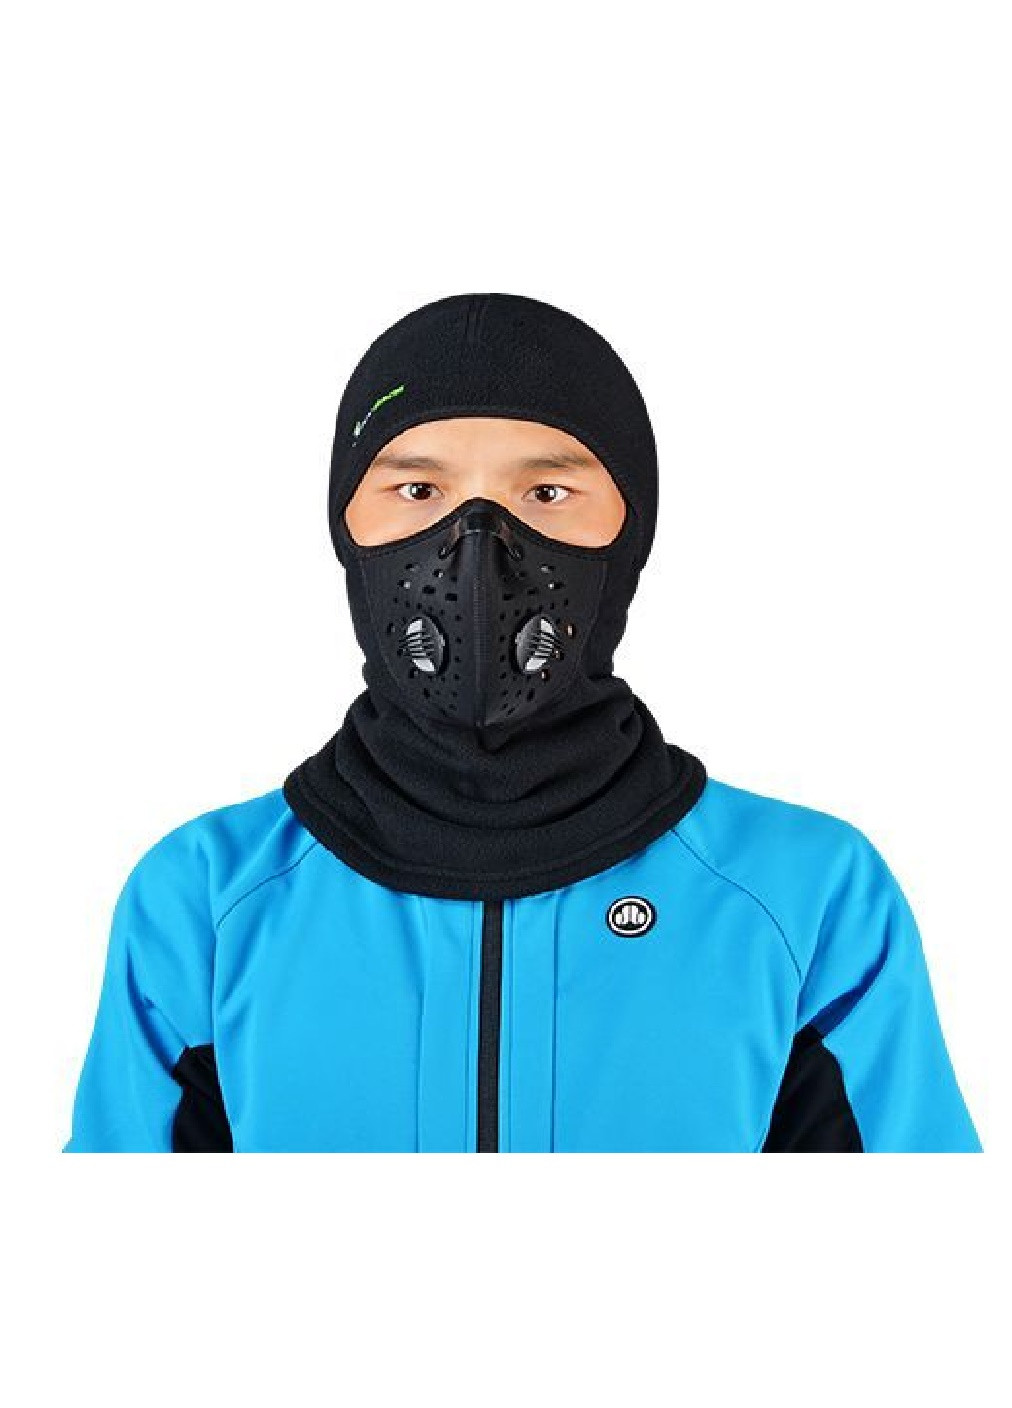 Francesco Marconi термо маска флисовая балаклава зимний бафф шарф подшлемник лыжная шапка (472821-prob) черная логотип черный кэжуал флис производство - Китай